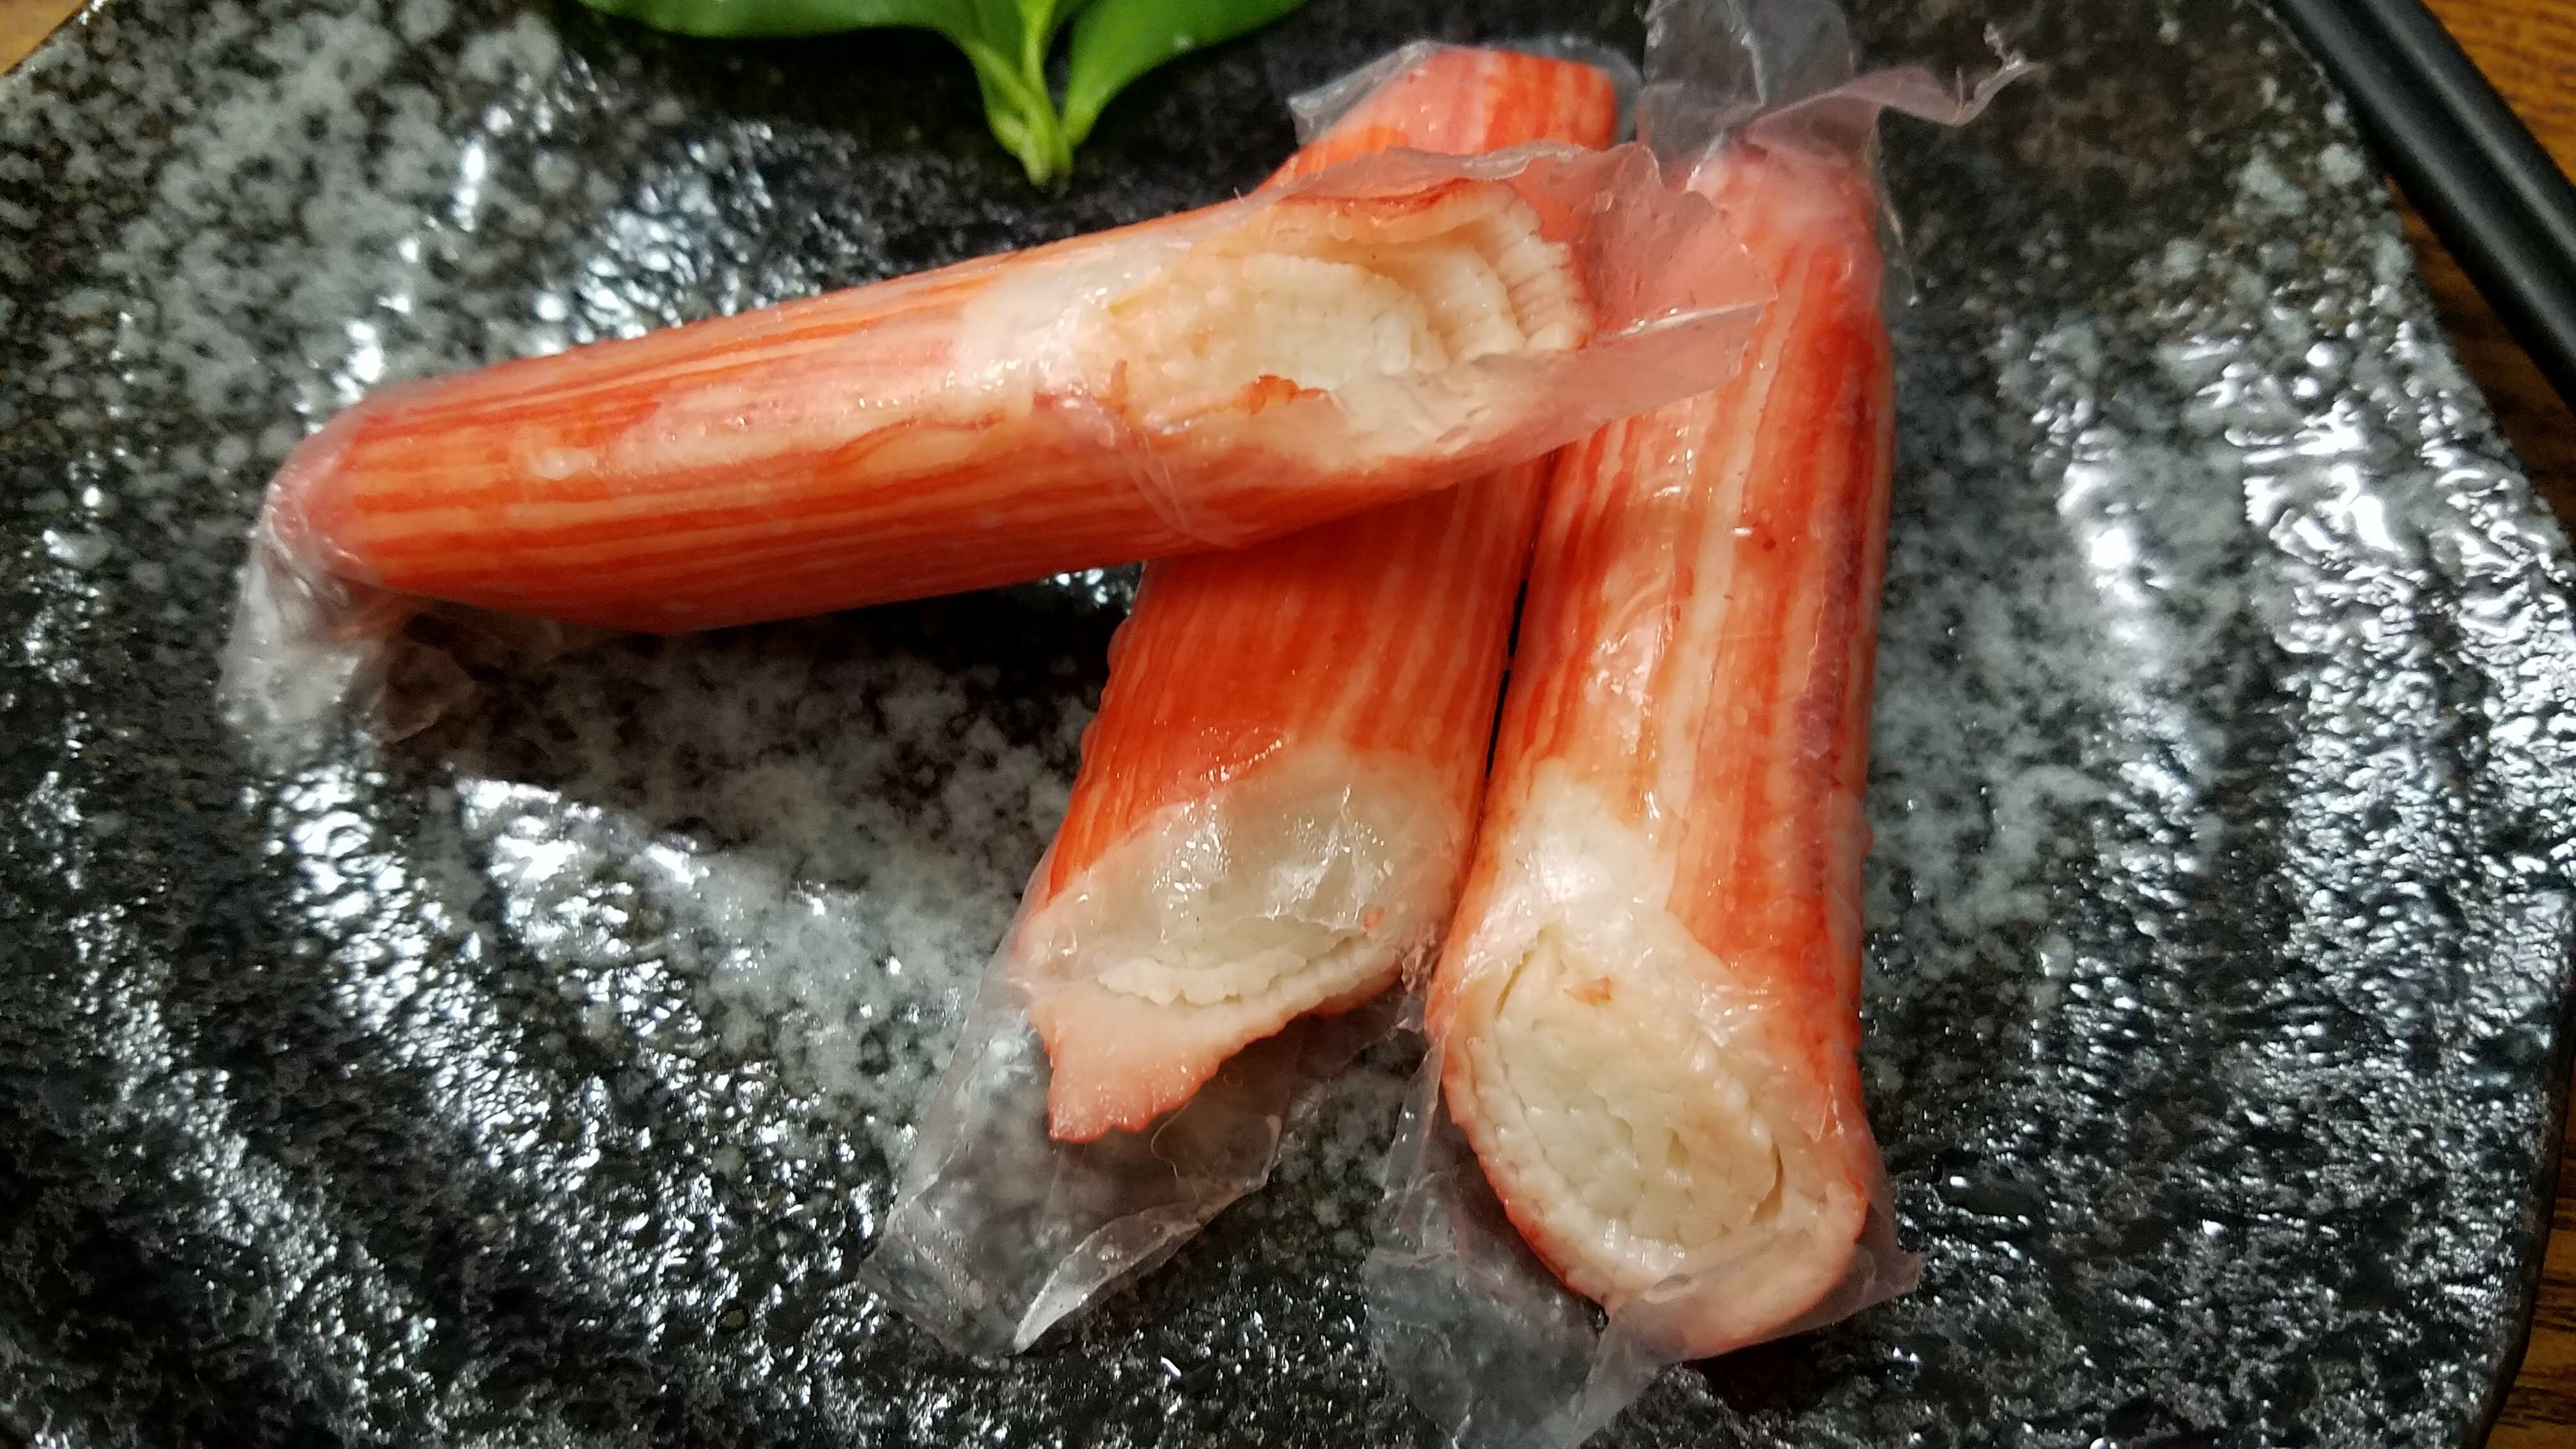 蟹味腿 250g【利津食品行】火鍋料 關東煮 蟹肉棒 冷凍食品